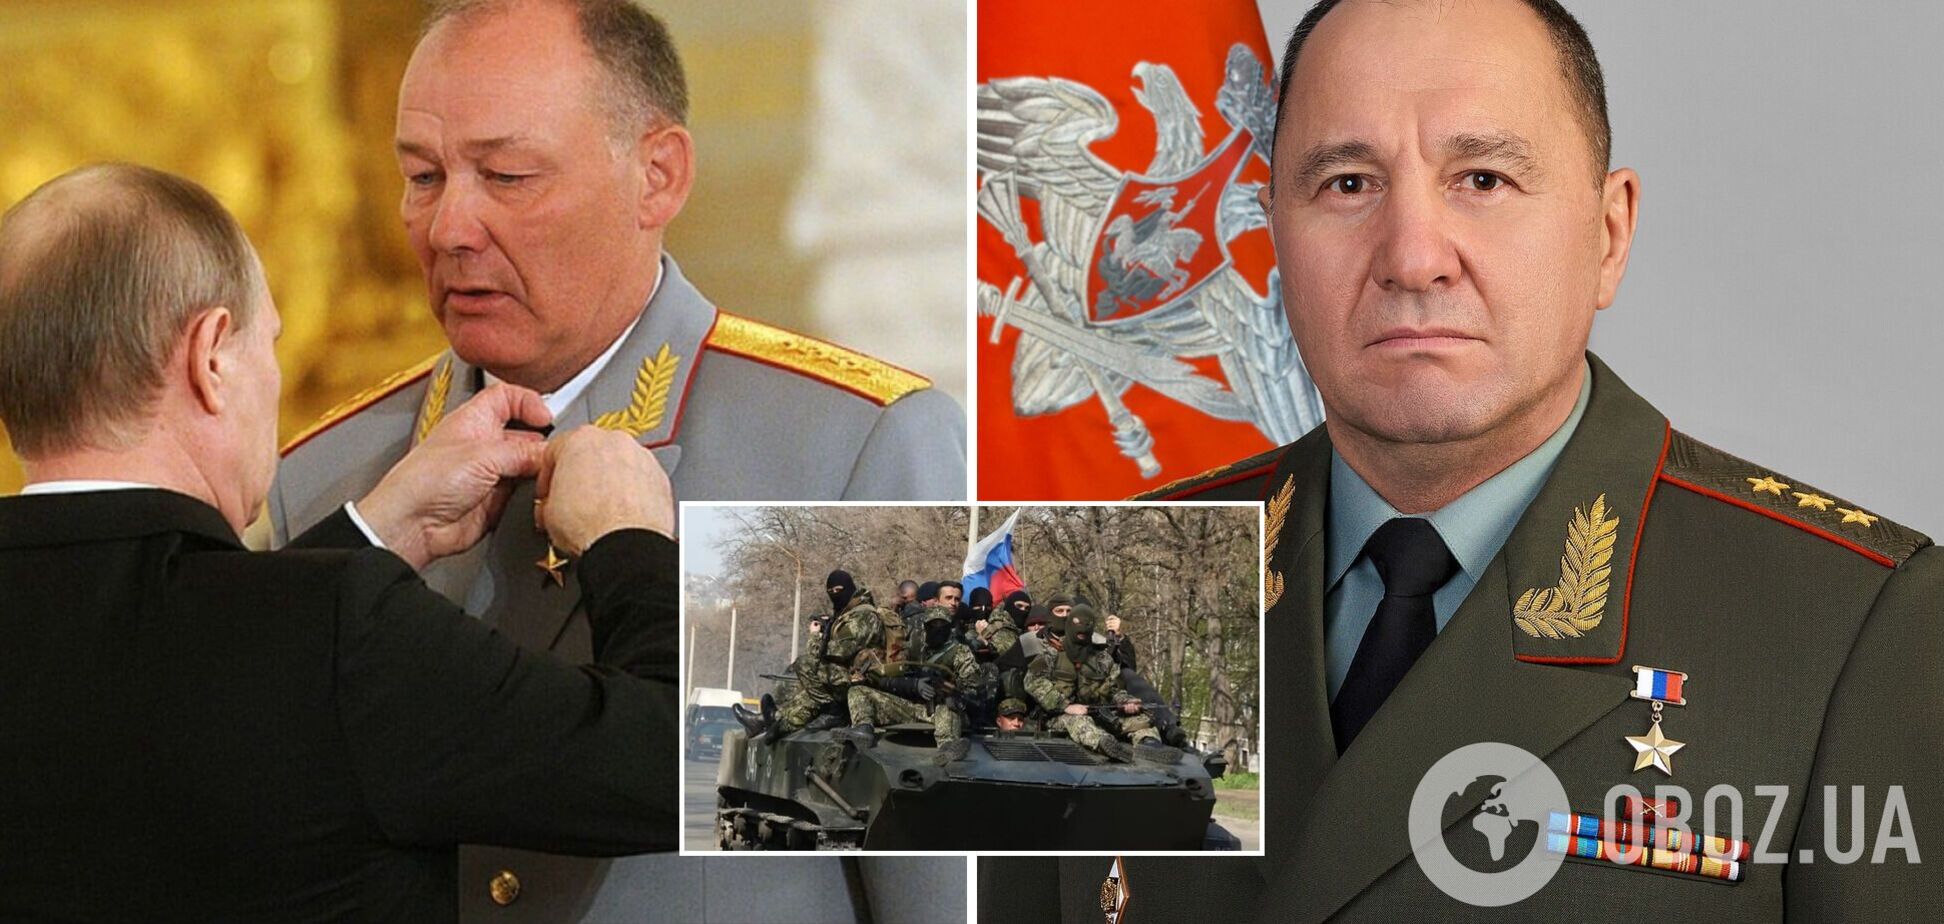 Дворнікова усунули від командування війною в Україні, головним Кремля зі 'спецоперації' став Жидко – CIT